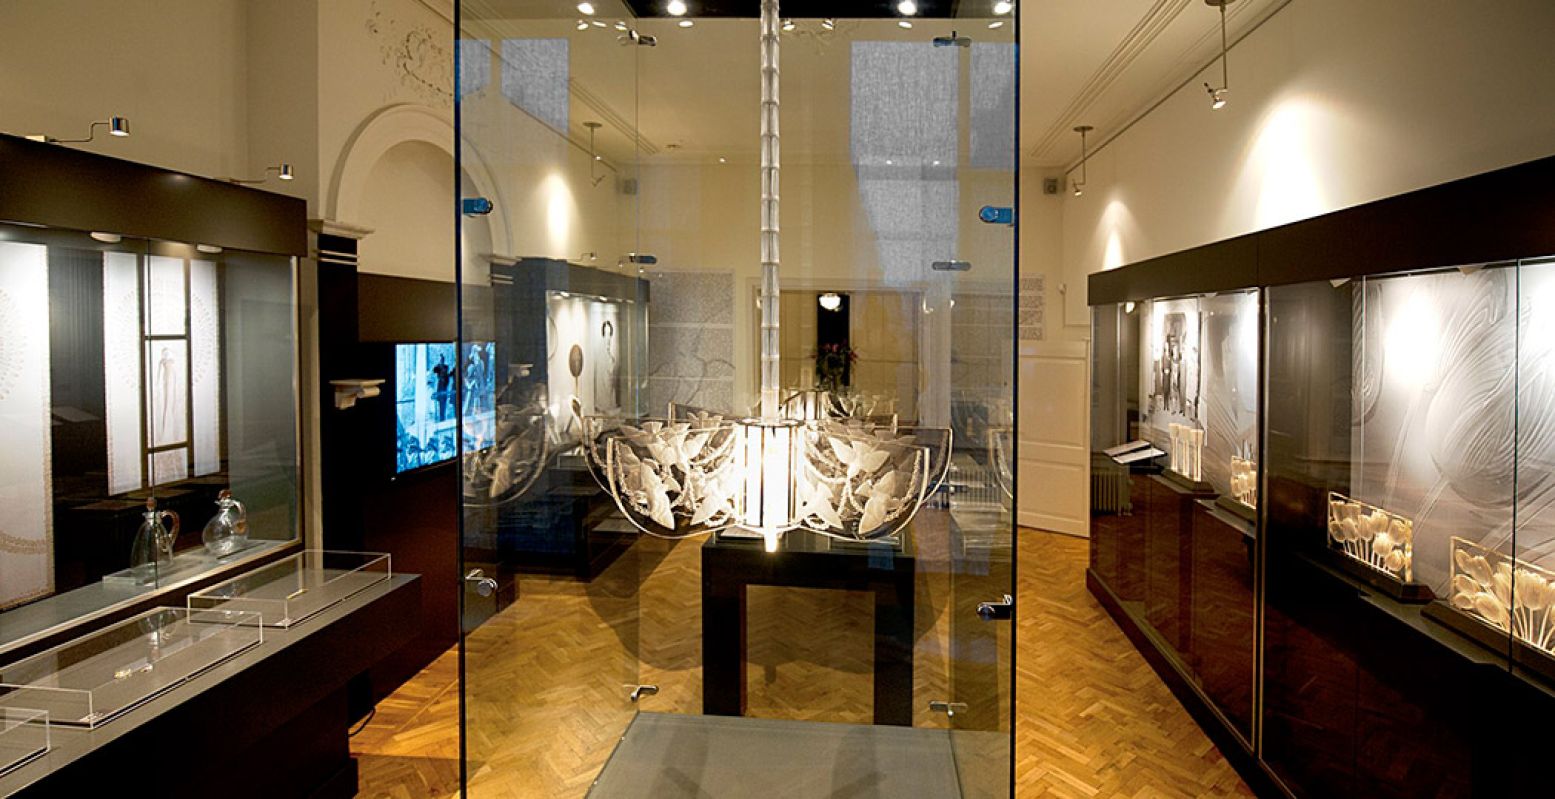 Overzicht van de expositie Koninklijk Licht, waar de juwelenexpositie een onderdeel van is. Foto: Museum Lalique © Linda Roelfszema